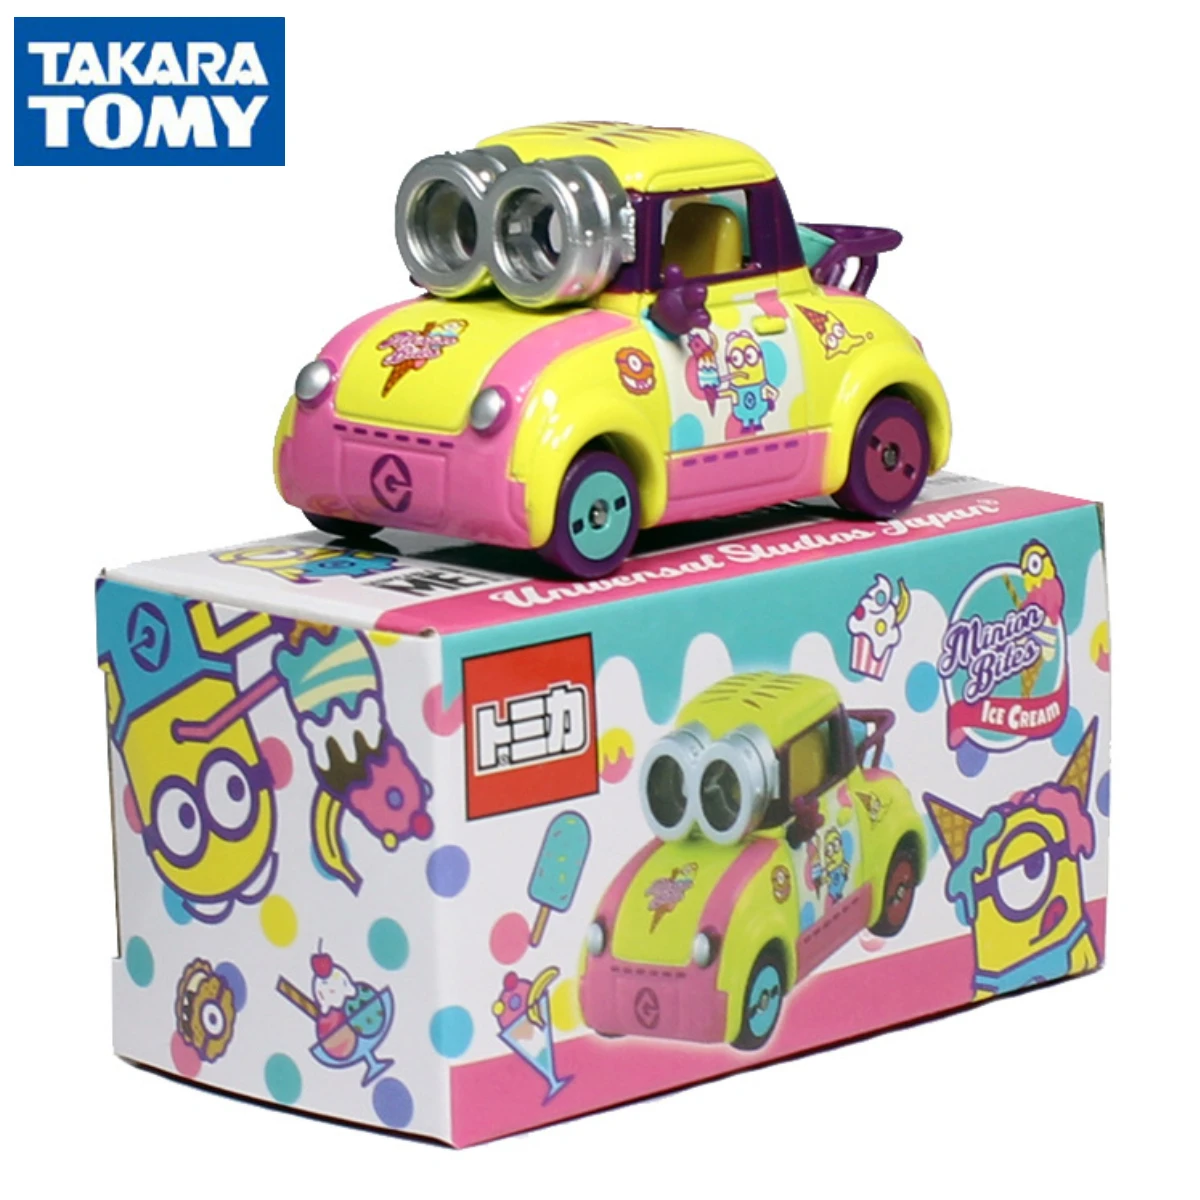 A Takara Tomy Tomica Escala Modelo de Carro Minion Kevin Bob Dave Carl Jerry Tim Phil Natal de Crianças de Decoração de Quarto de Presente Brinquedos para Meninos Meninas